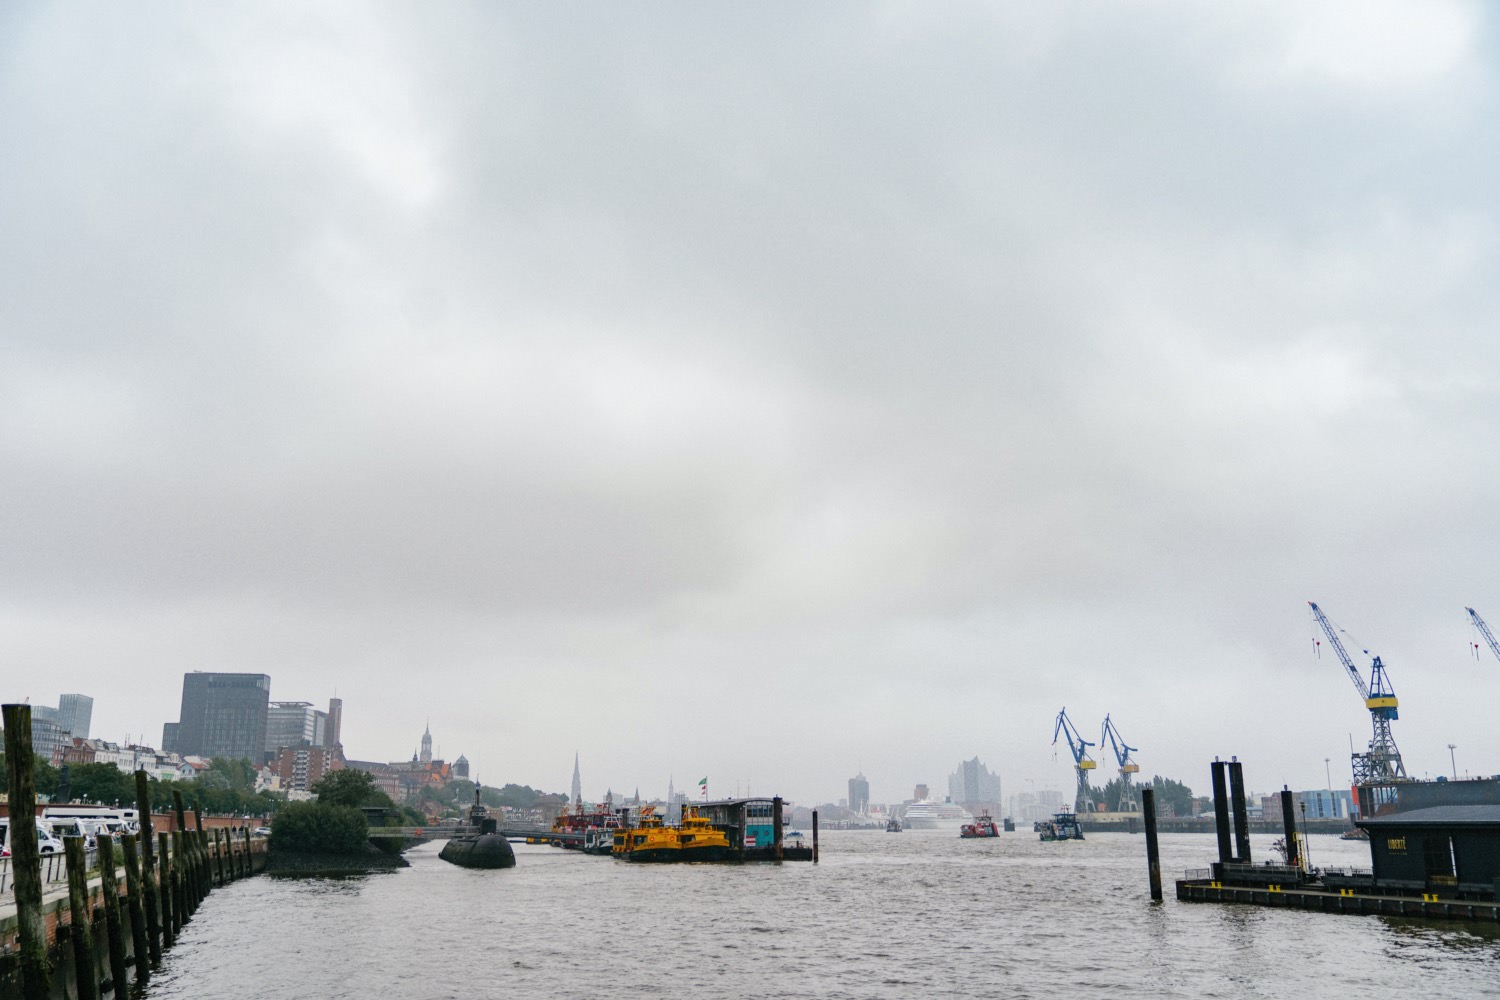 Blick auf den Hamburger Hafen bei diesigem Wetter und grauen Wolken vom Fischmarkt aus gesehen